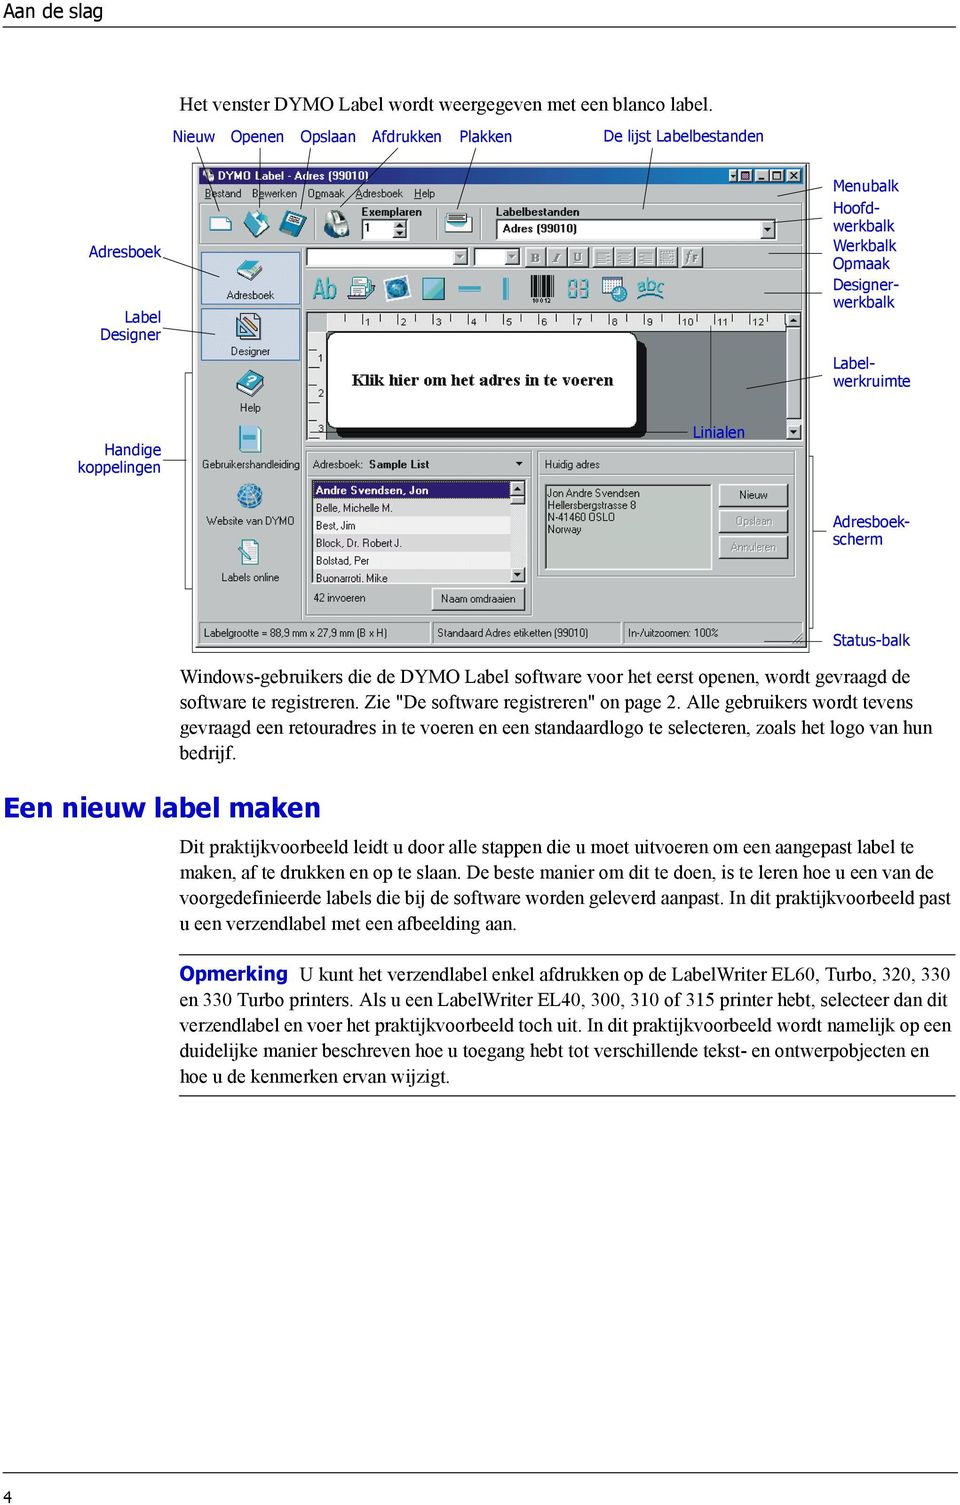 Adresboekscherm Een nieuw label maken Status-balk Windows-gebruikers die de DYMO Label software voor het eerst openen, wordt gevraagd de software te registreren.